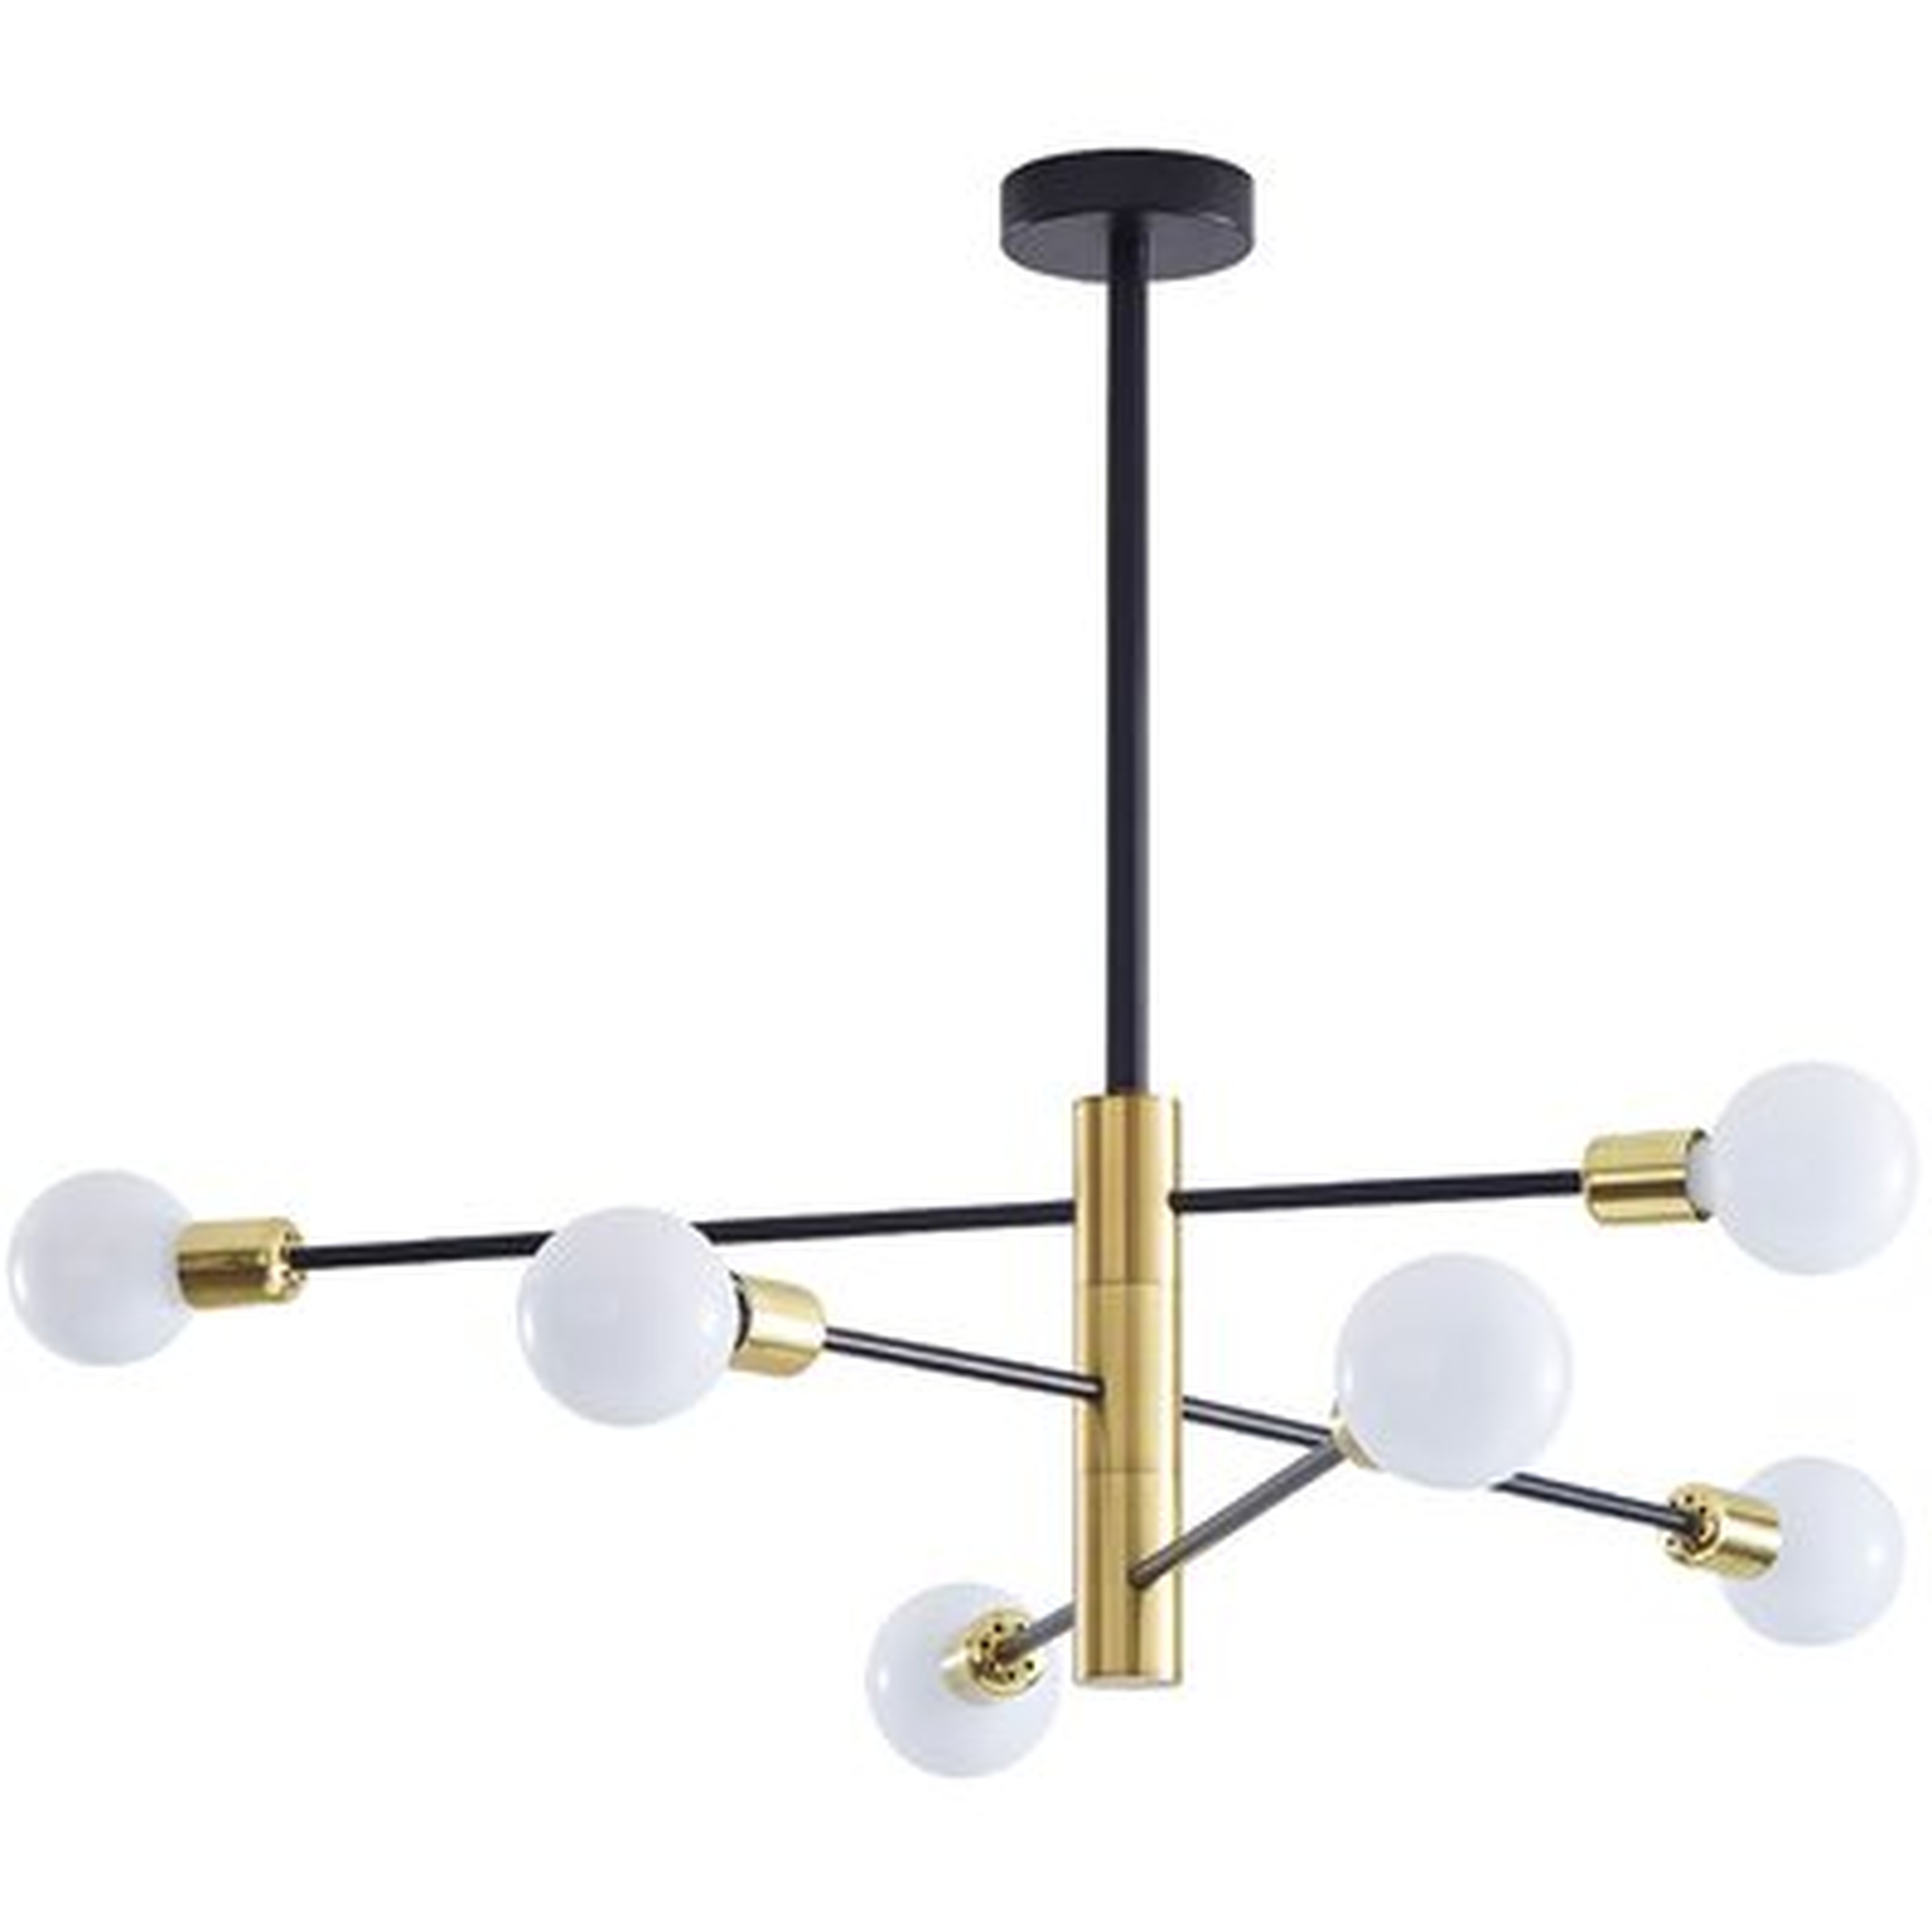 Nordic Modern Sputnik Chandelier Black Gold Ceiling Light For Bedroom, Living Room And Kitchen - Wayfair